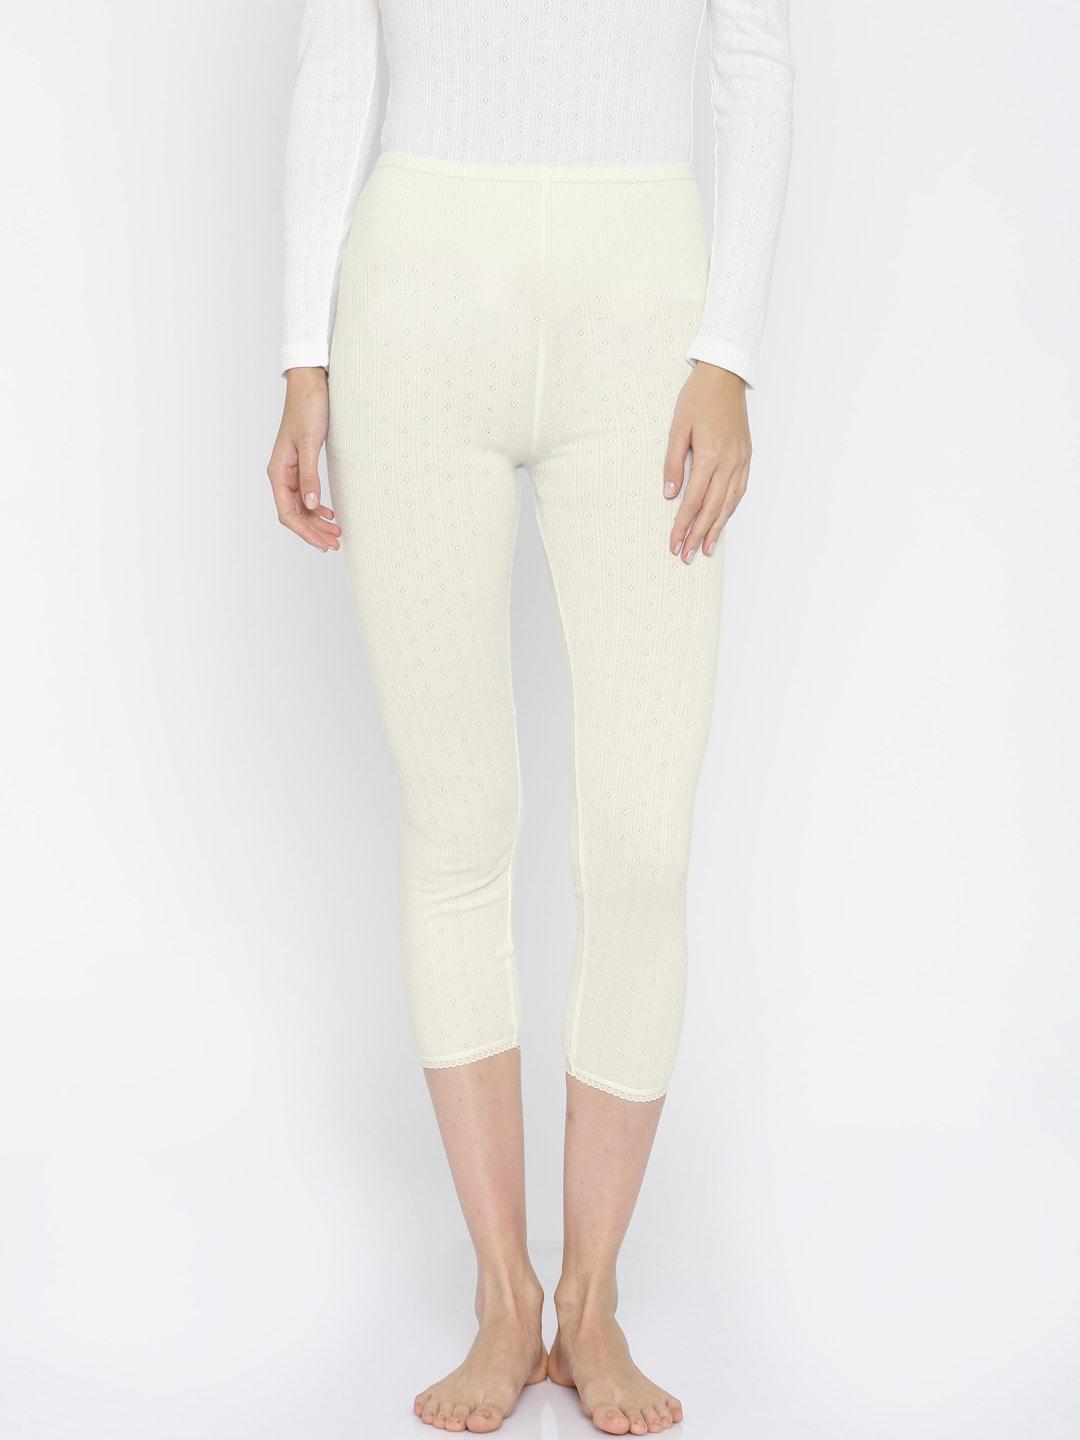 kanvin-off-white-thermal-leggings